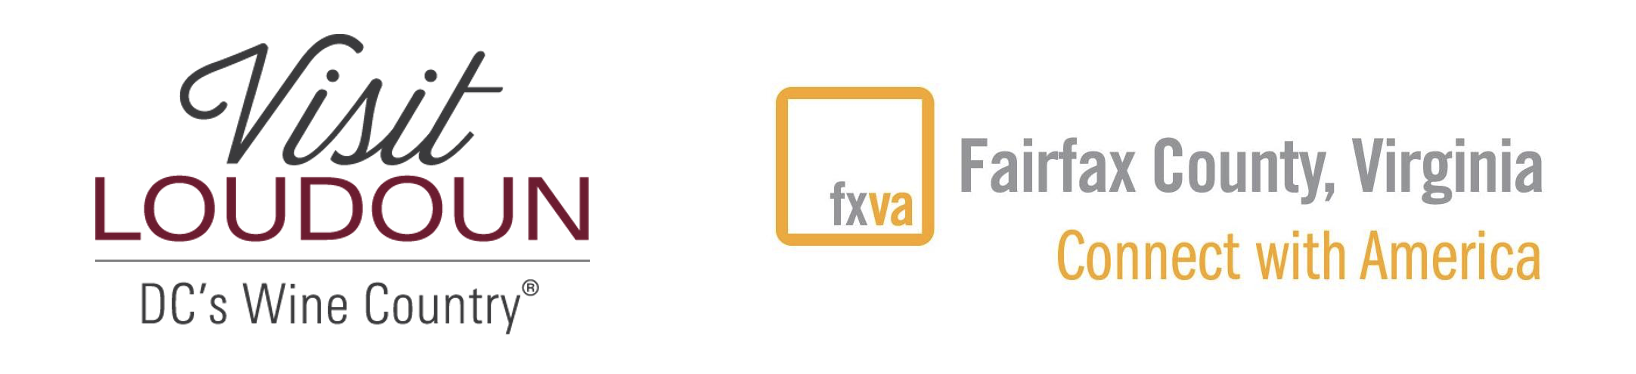 Visit Loudoun and Visit Fairfax logos